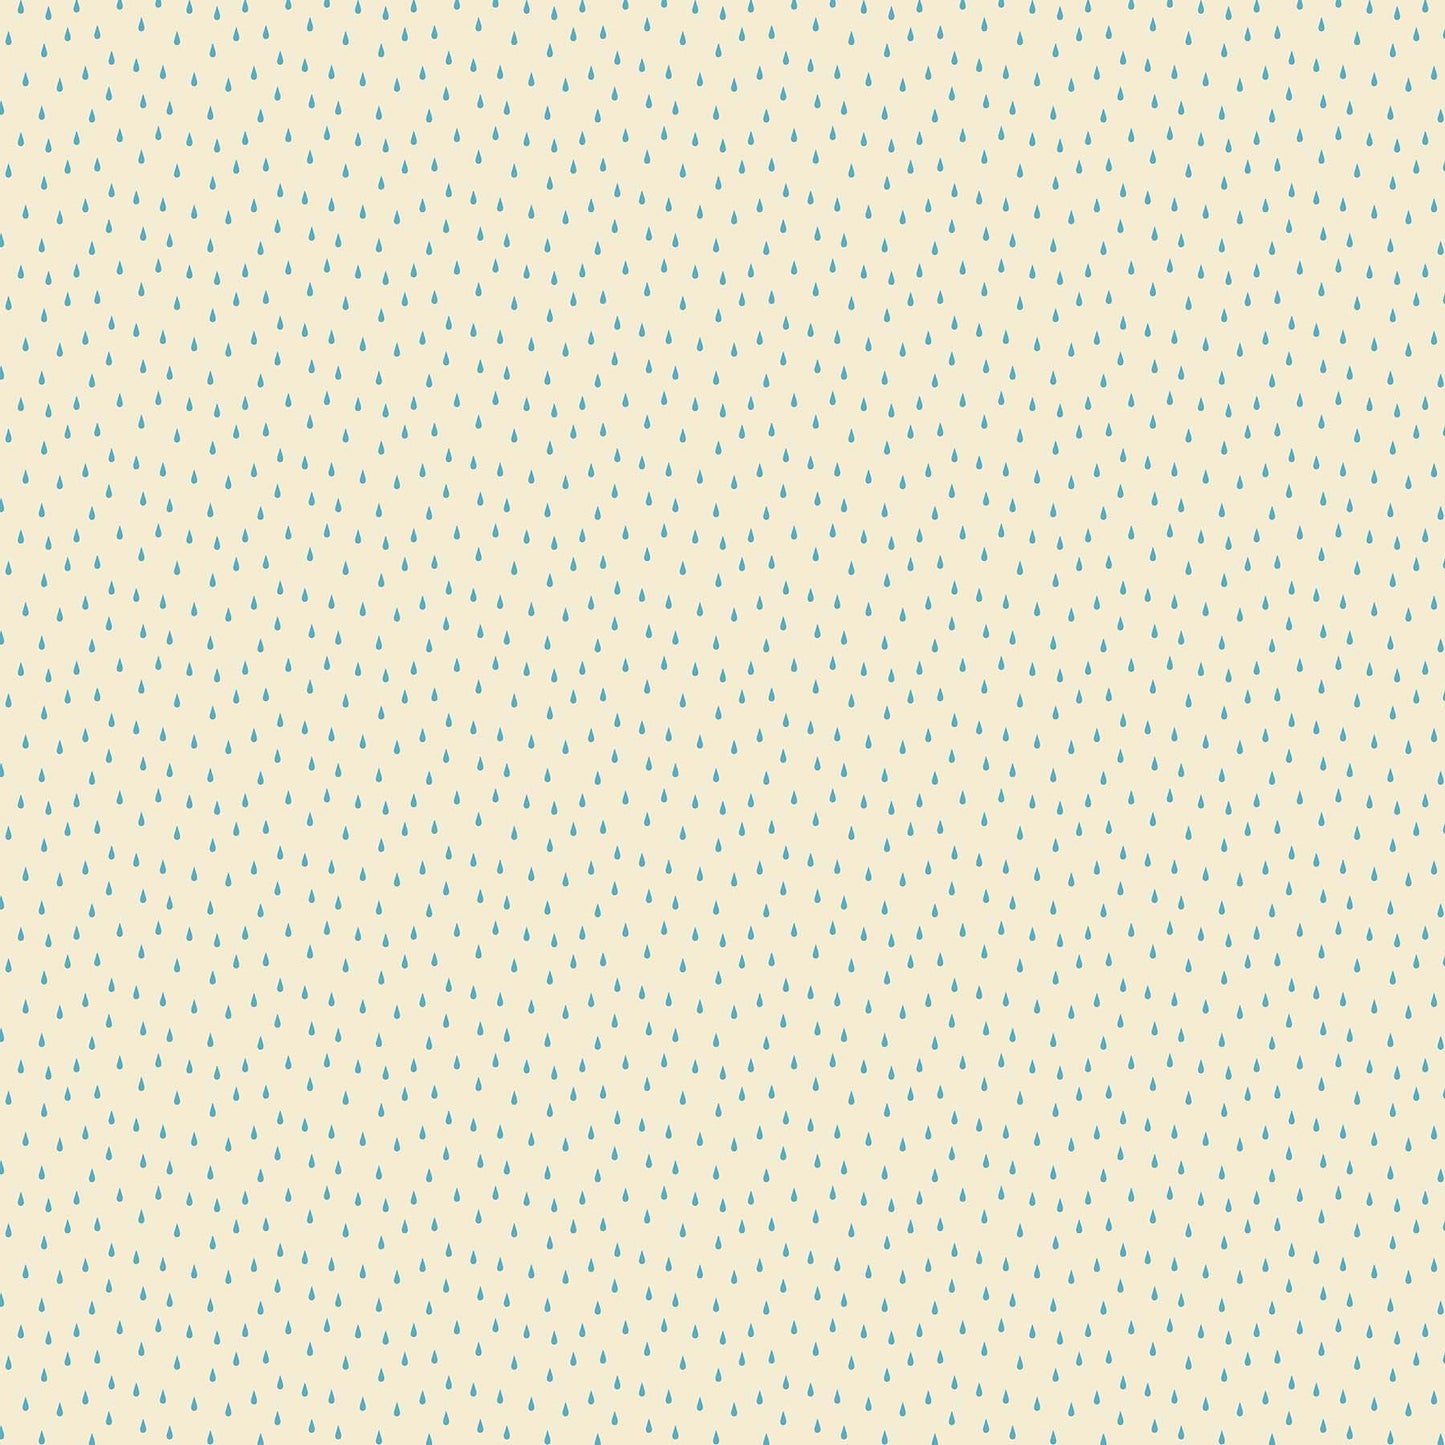 Figo Fabric Simple Pleasures - Drops on Cream by Naomi Wilkinson